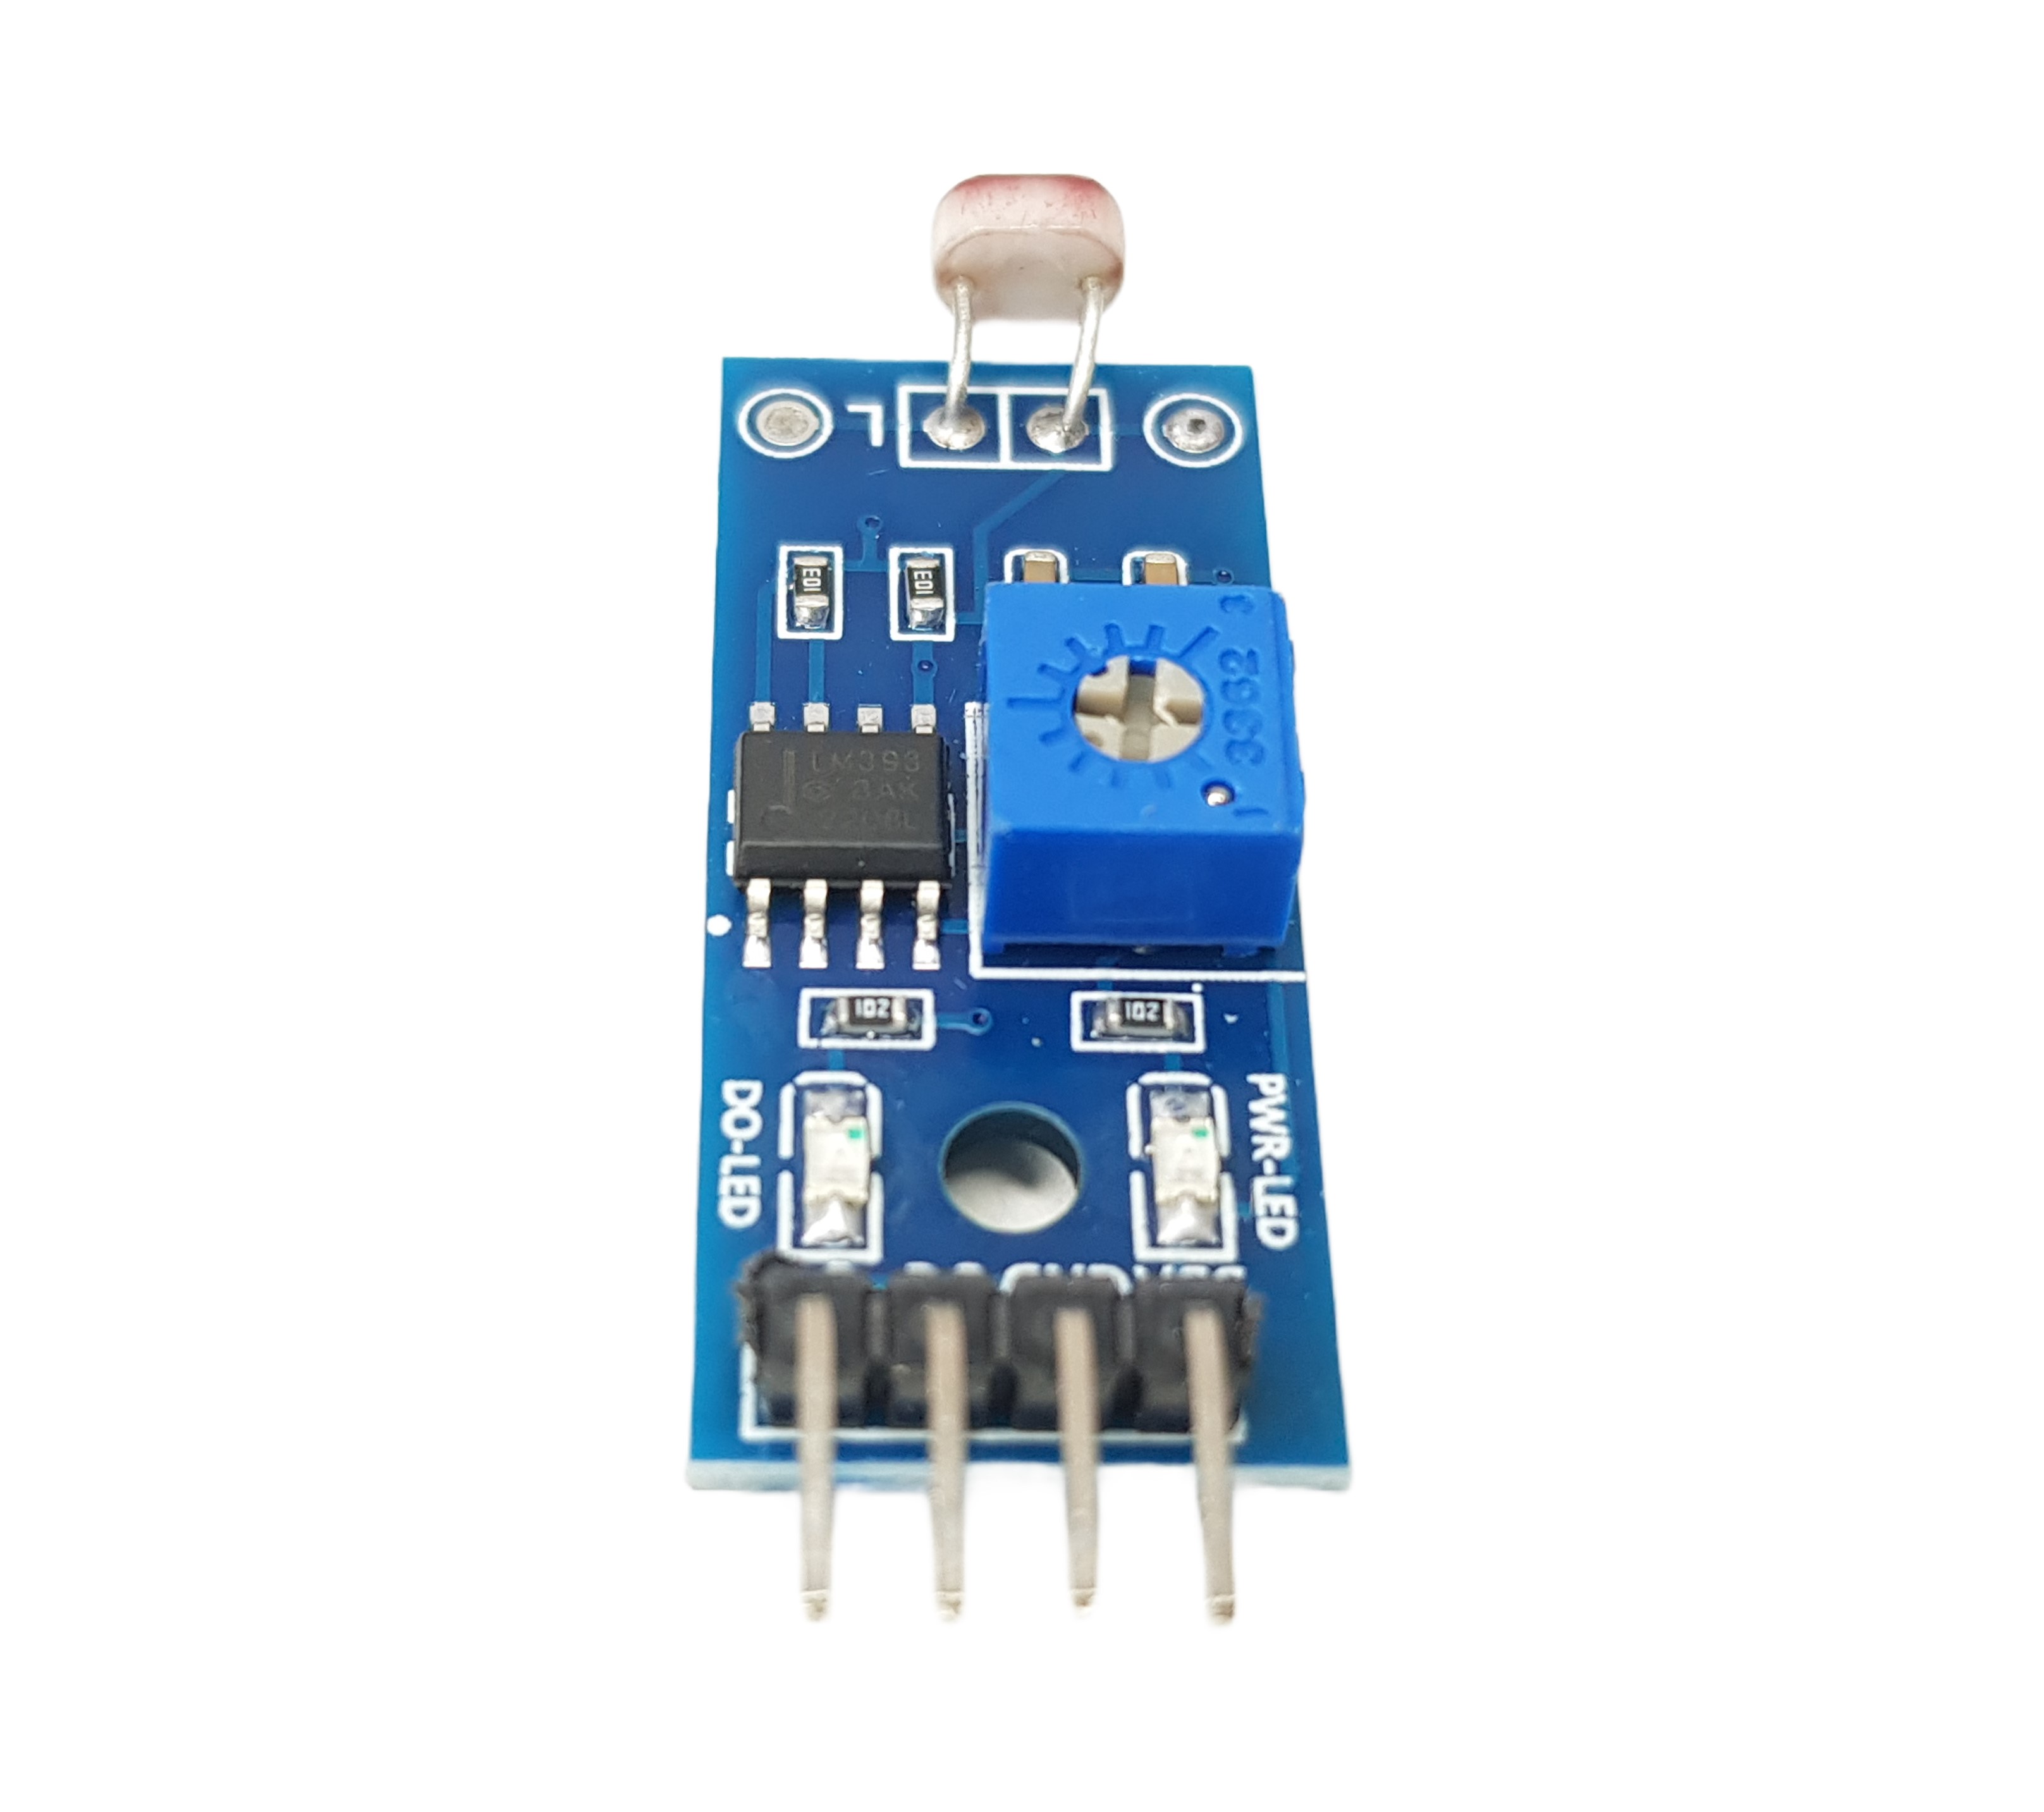 Digital Light Sensor for Arduino, ESP32, ESP8266, Raspberry Pi, 4 pieces